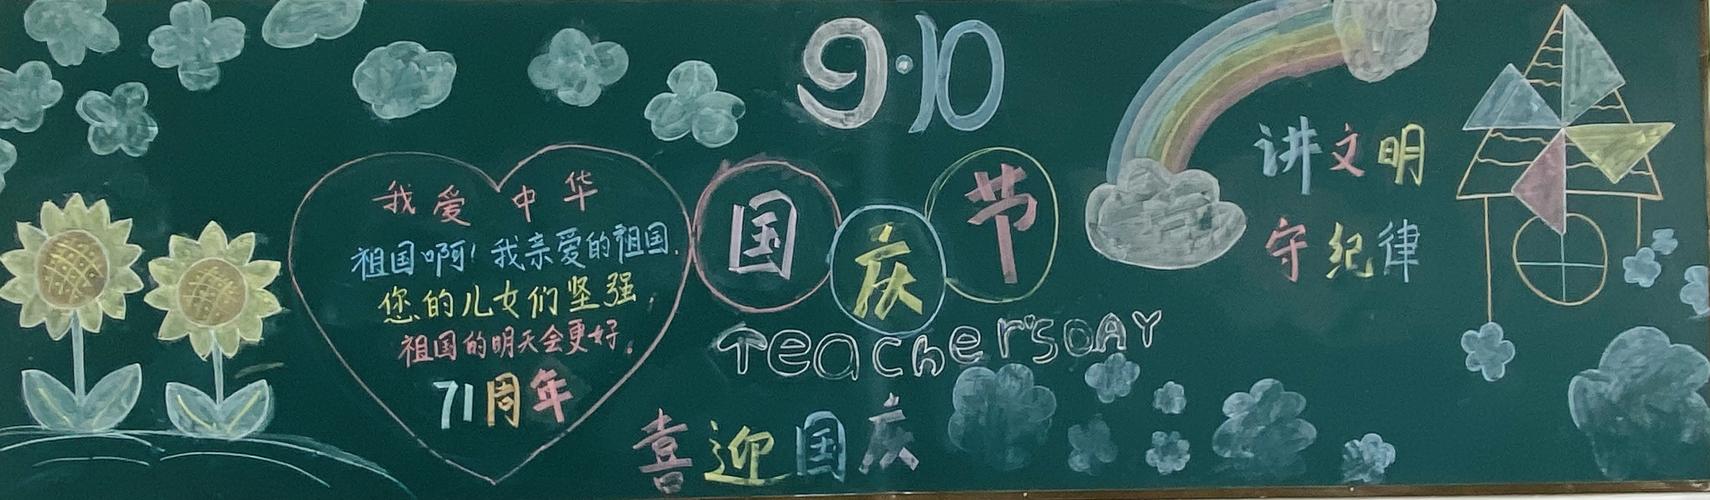 制作出一幅幅精美的黑板报作品 中国日新月异的变化被同学们悉心描绘